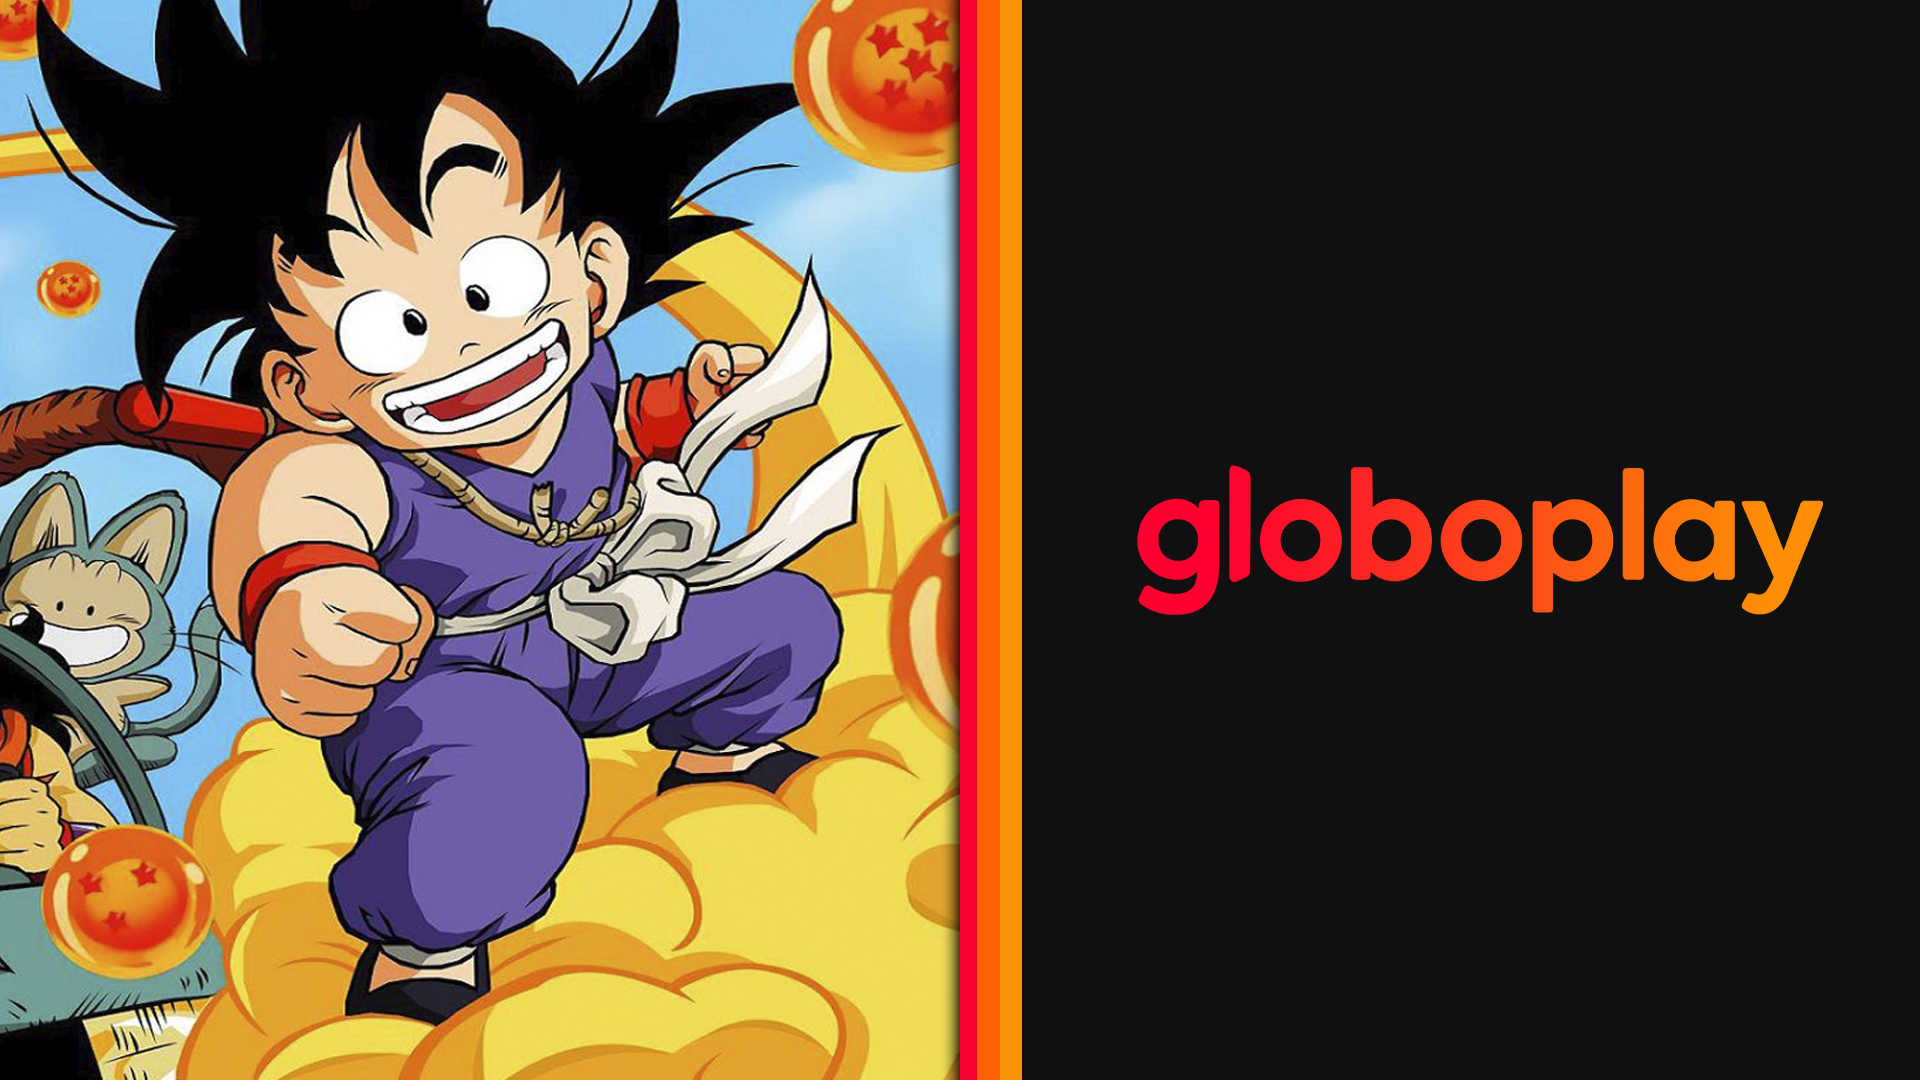 Globoplay terá 'Dragon Ball' no catálogo a partir de setembro - Verso -  Diário do Nordeste